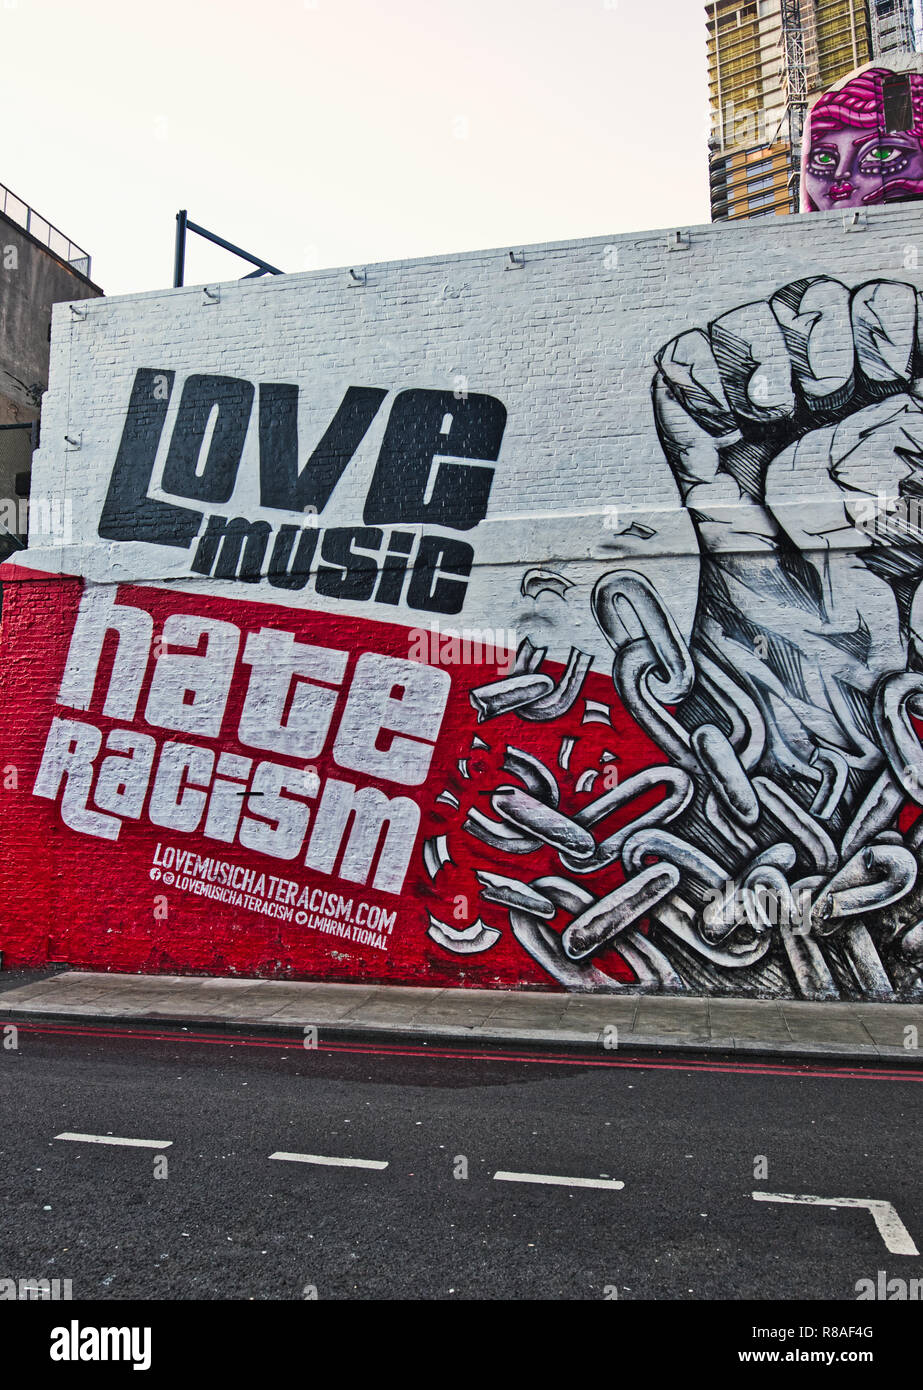 Liebe Musik hassen Rassismus Nachricht auf dedizierten street art Wand, Holywell Lane, Shoreditch, London, Vereinigtes Königreich Stockfoto